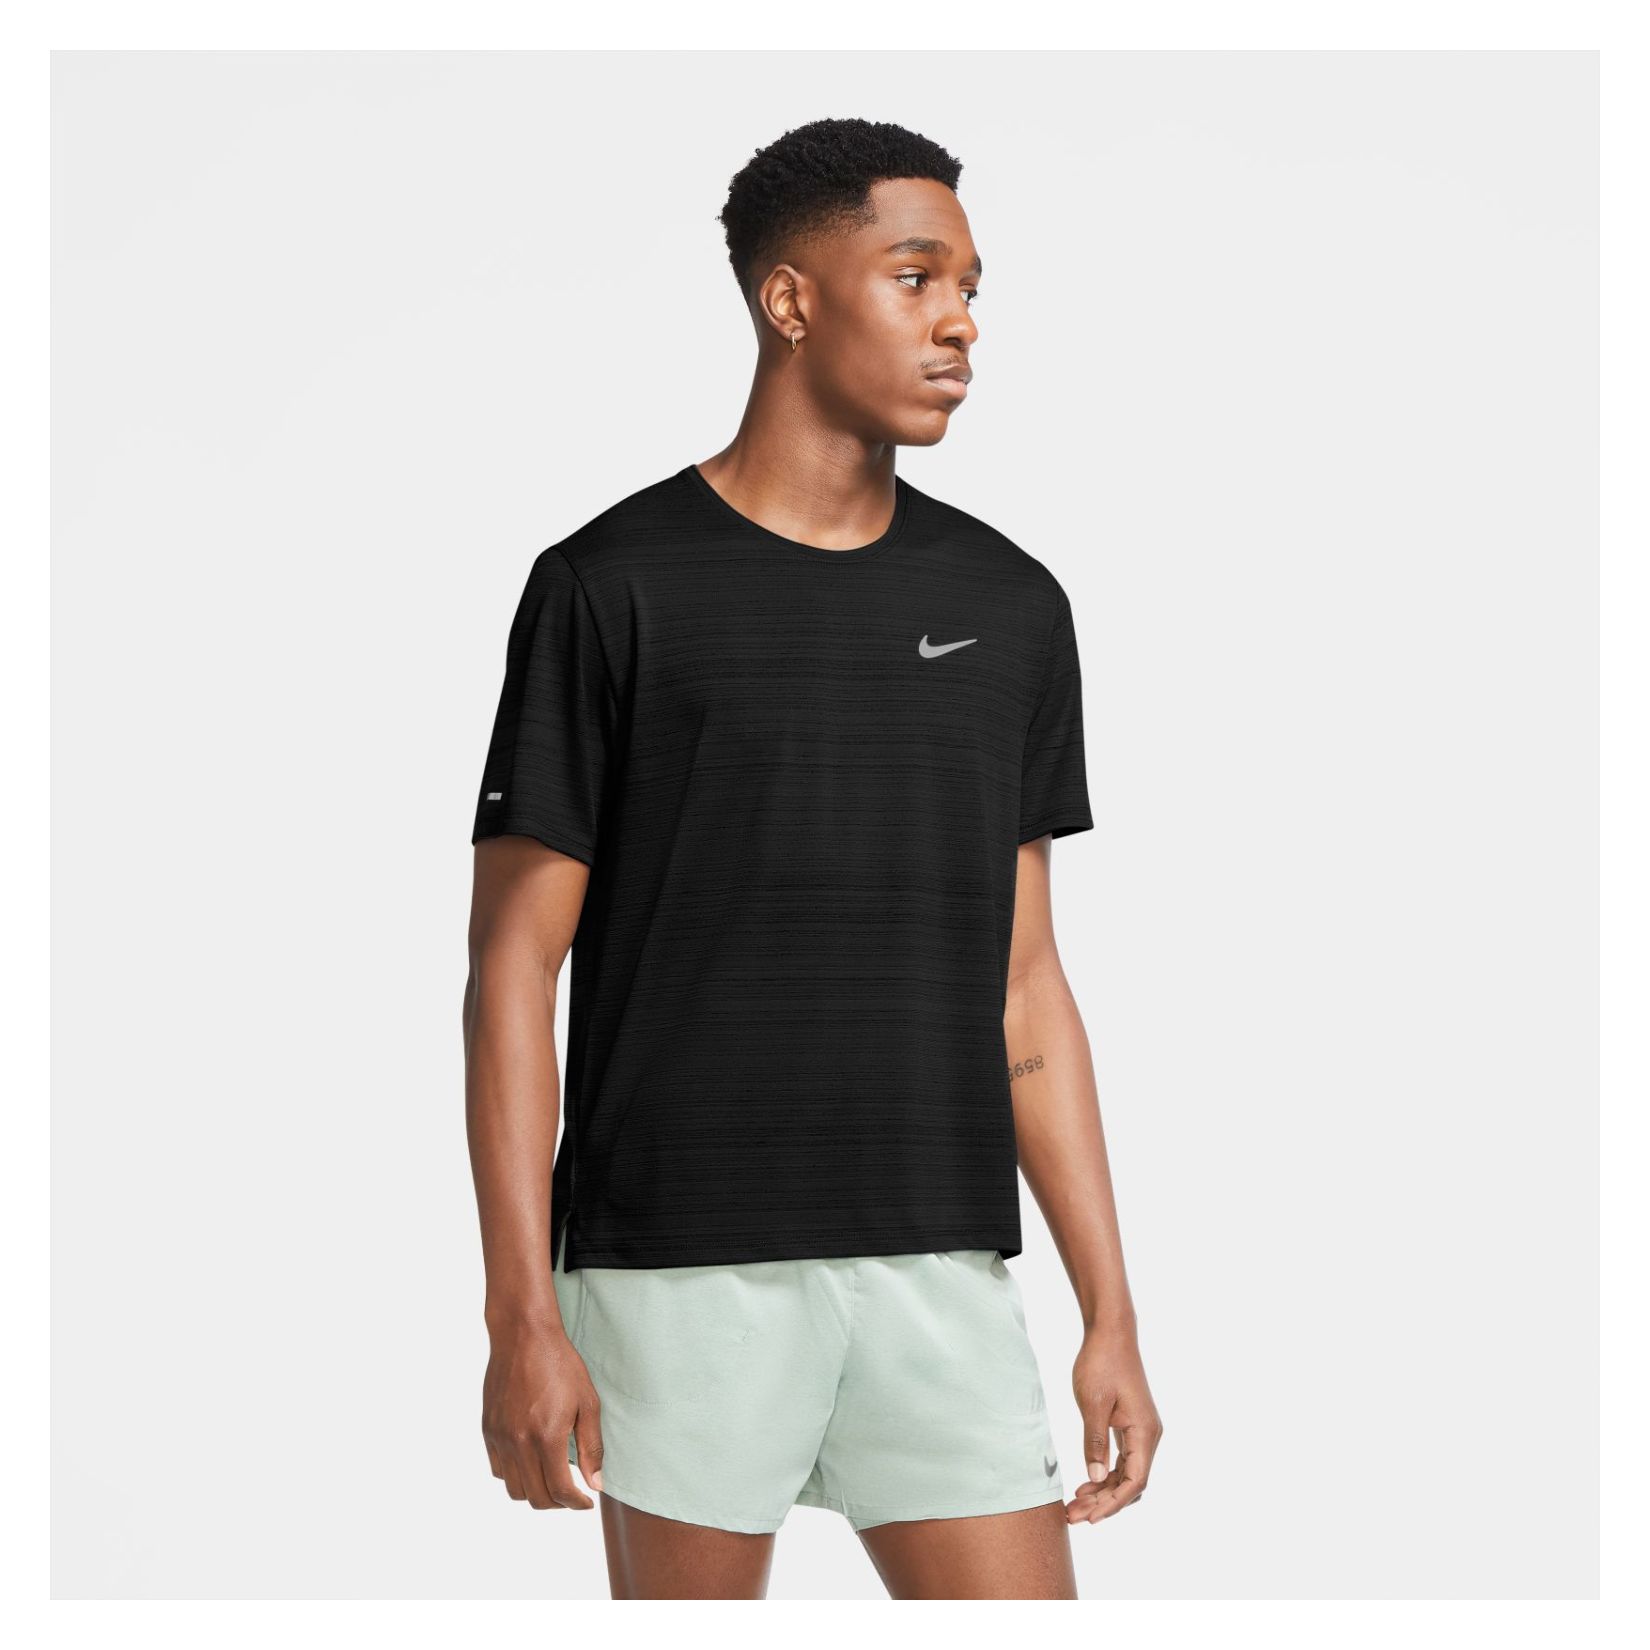 Nike Dri-FIT Miler Short Sleeve Running Top - Kitlocker.com